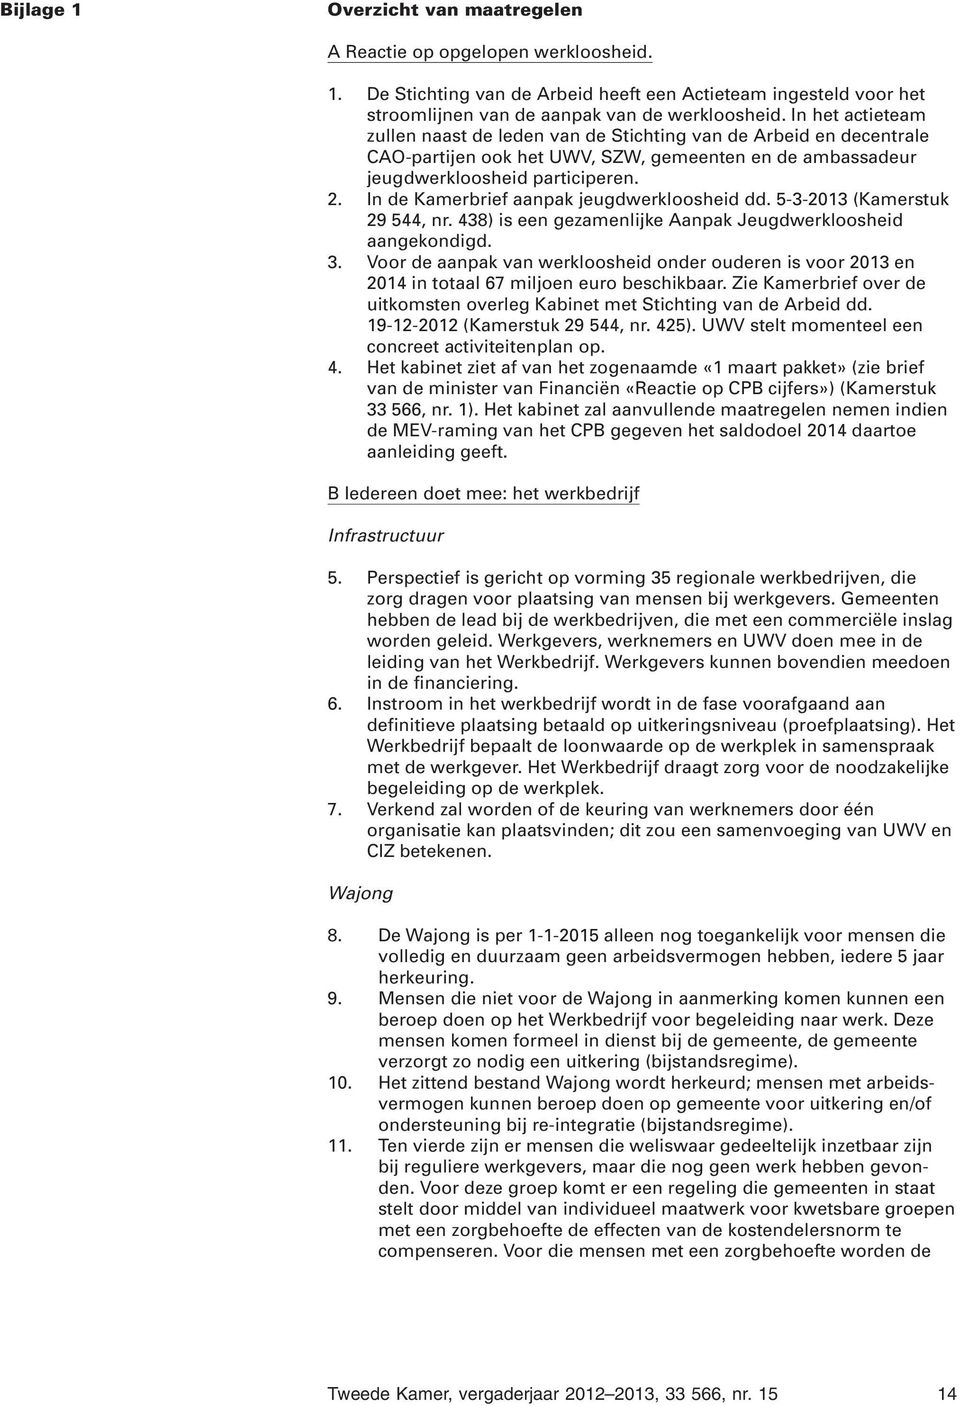 In de Kamerbrief aanpak jeugdwerkloosheid dd. 5-3-2013 (Kamerstuk 29 544, nr. 438) is een gezamenlijke Aanpak Jeugdwerkloosheid aangekondigd. 3.